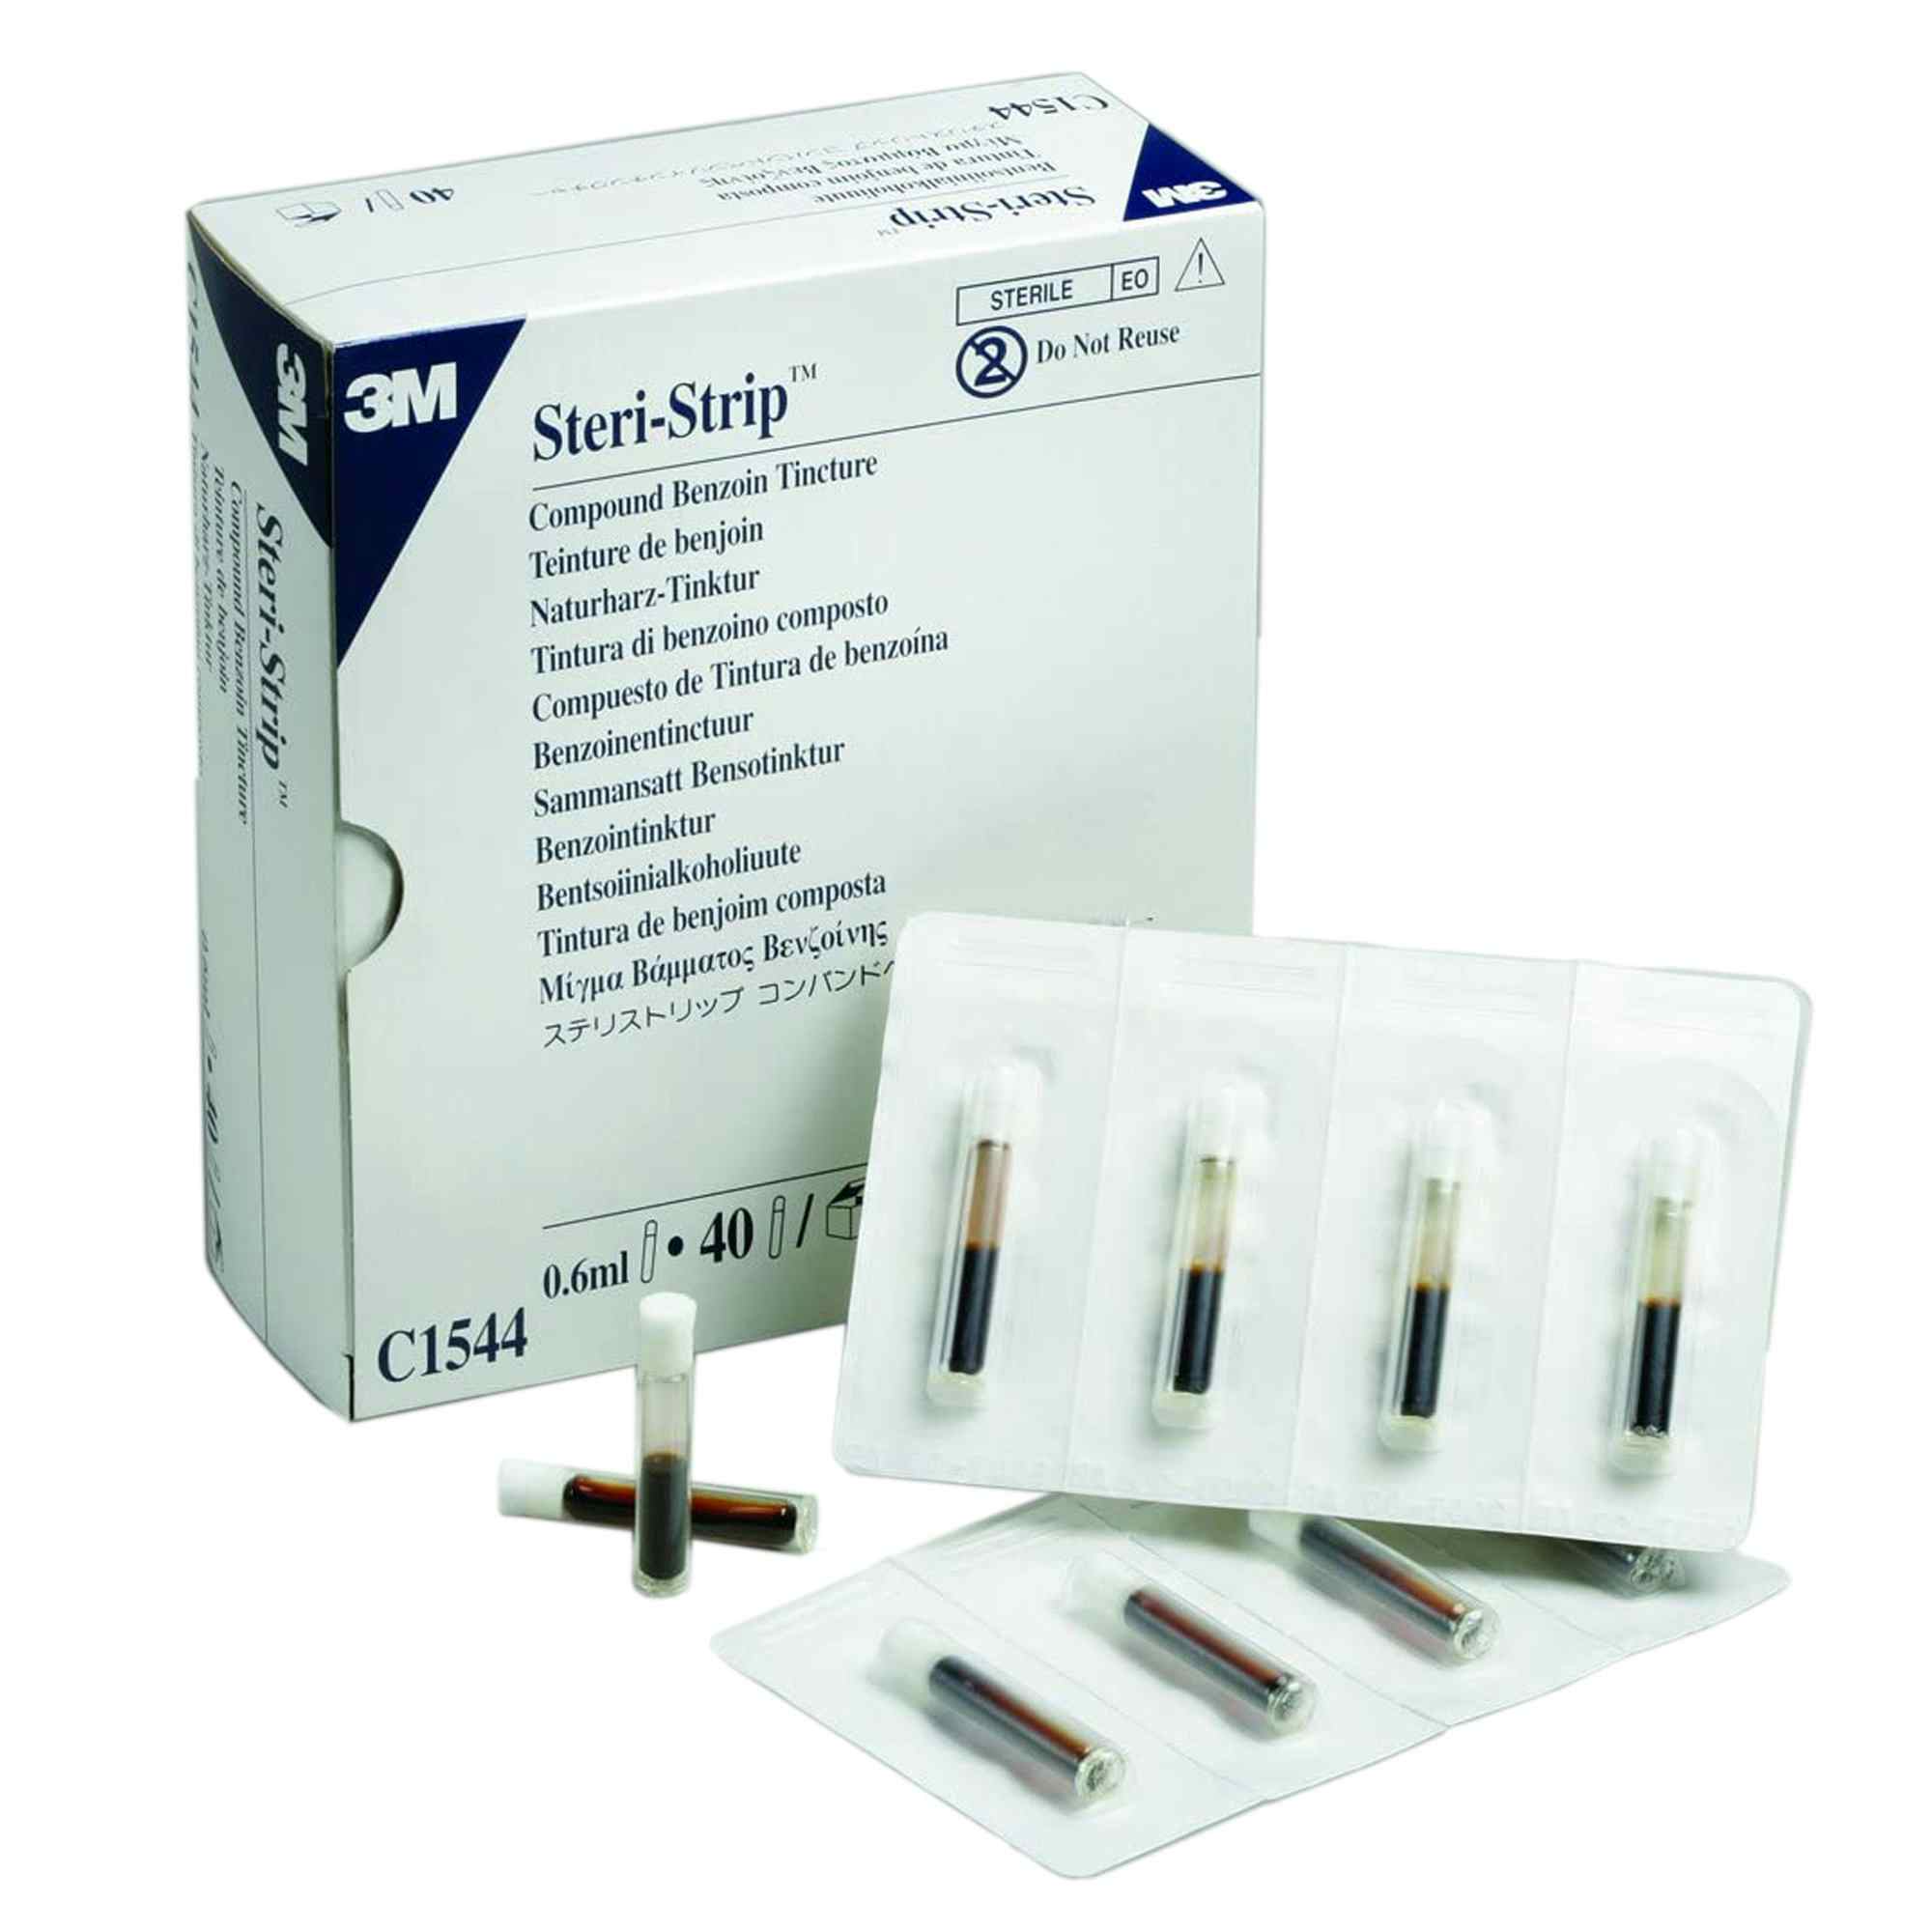 3M Steri-Strip Compound Benzoin Tincture, C1544, Box of 40